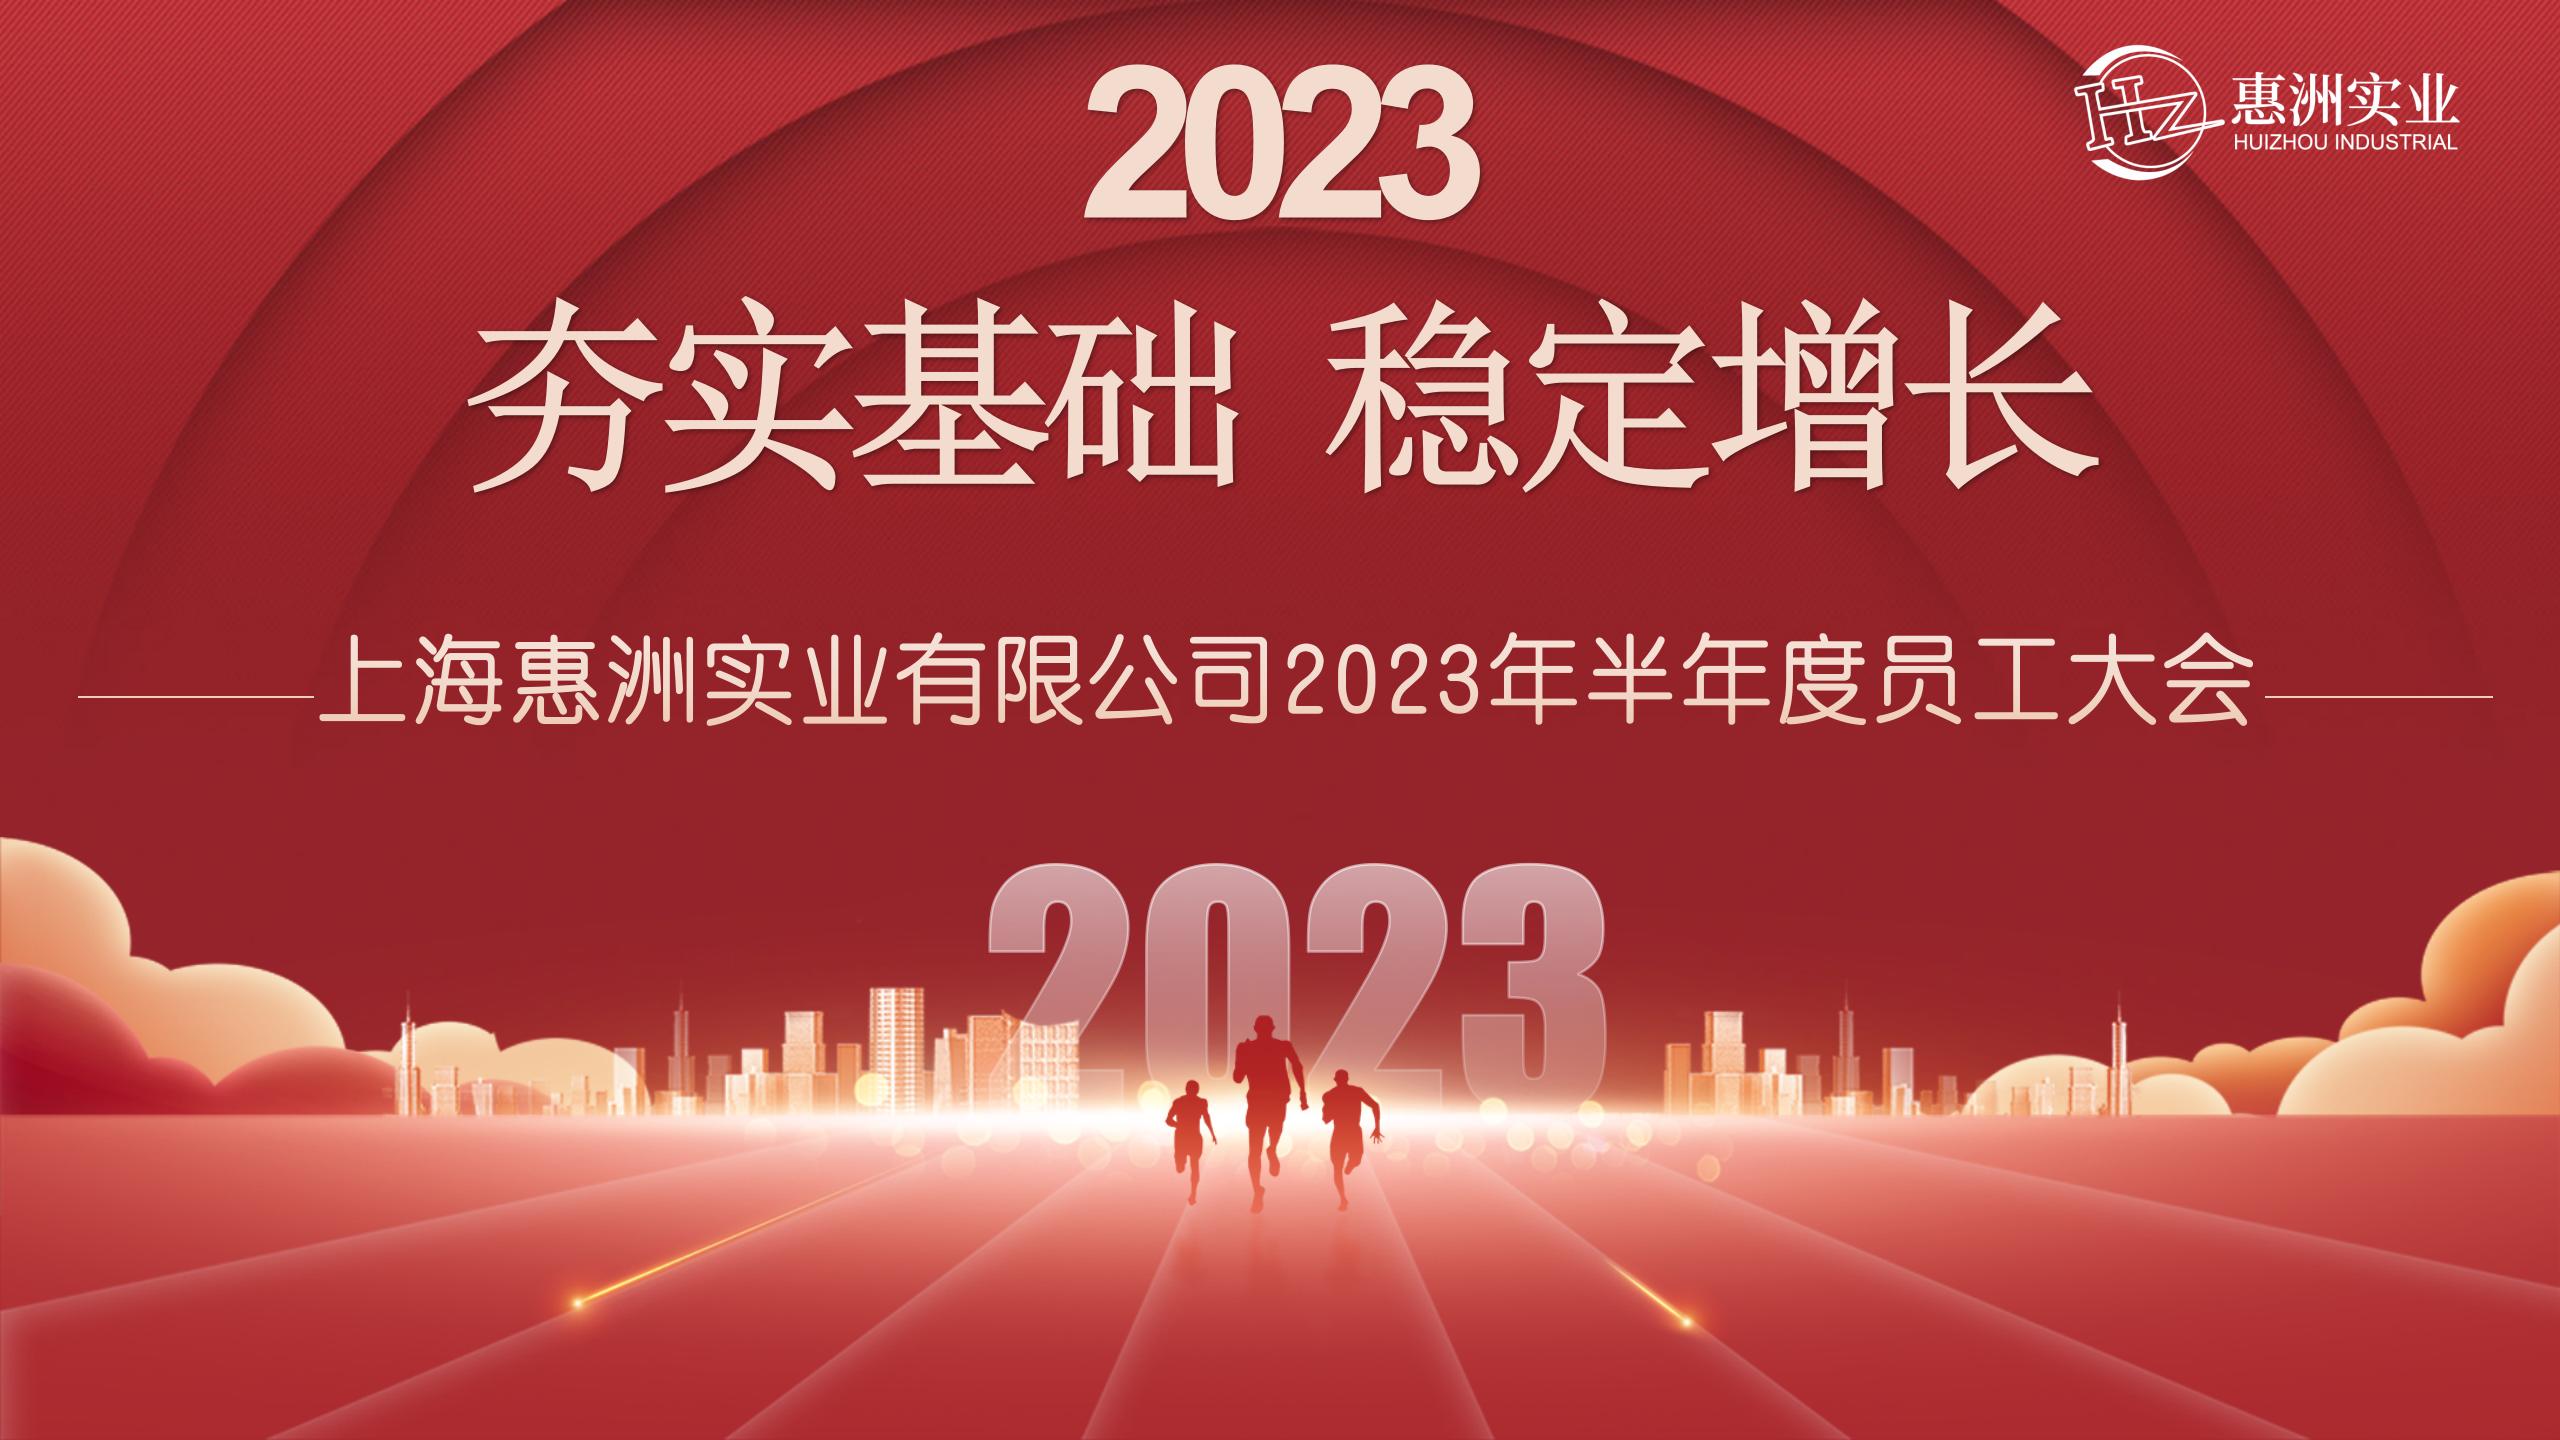 Polletno srečanje osebja v Huizhouju 2023 |